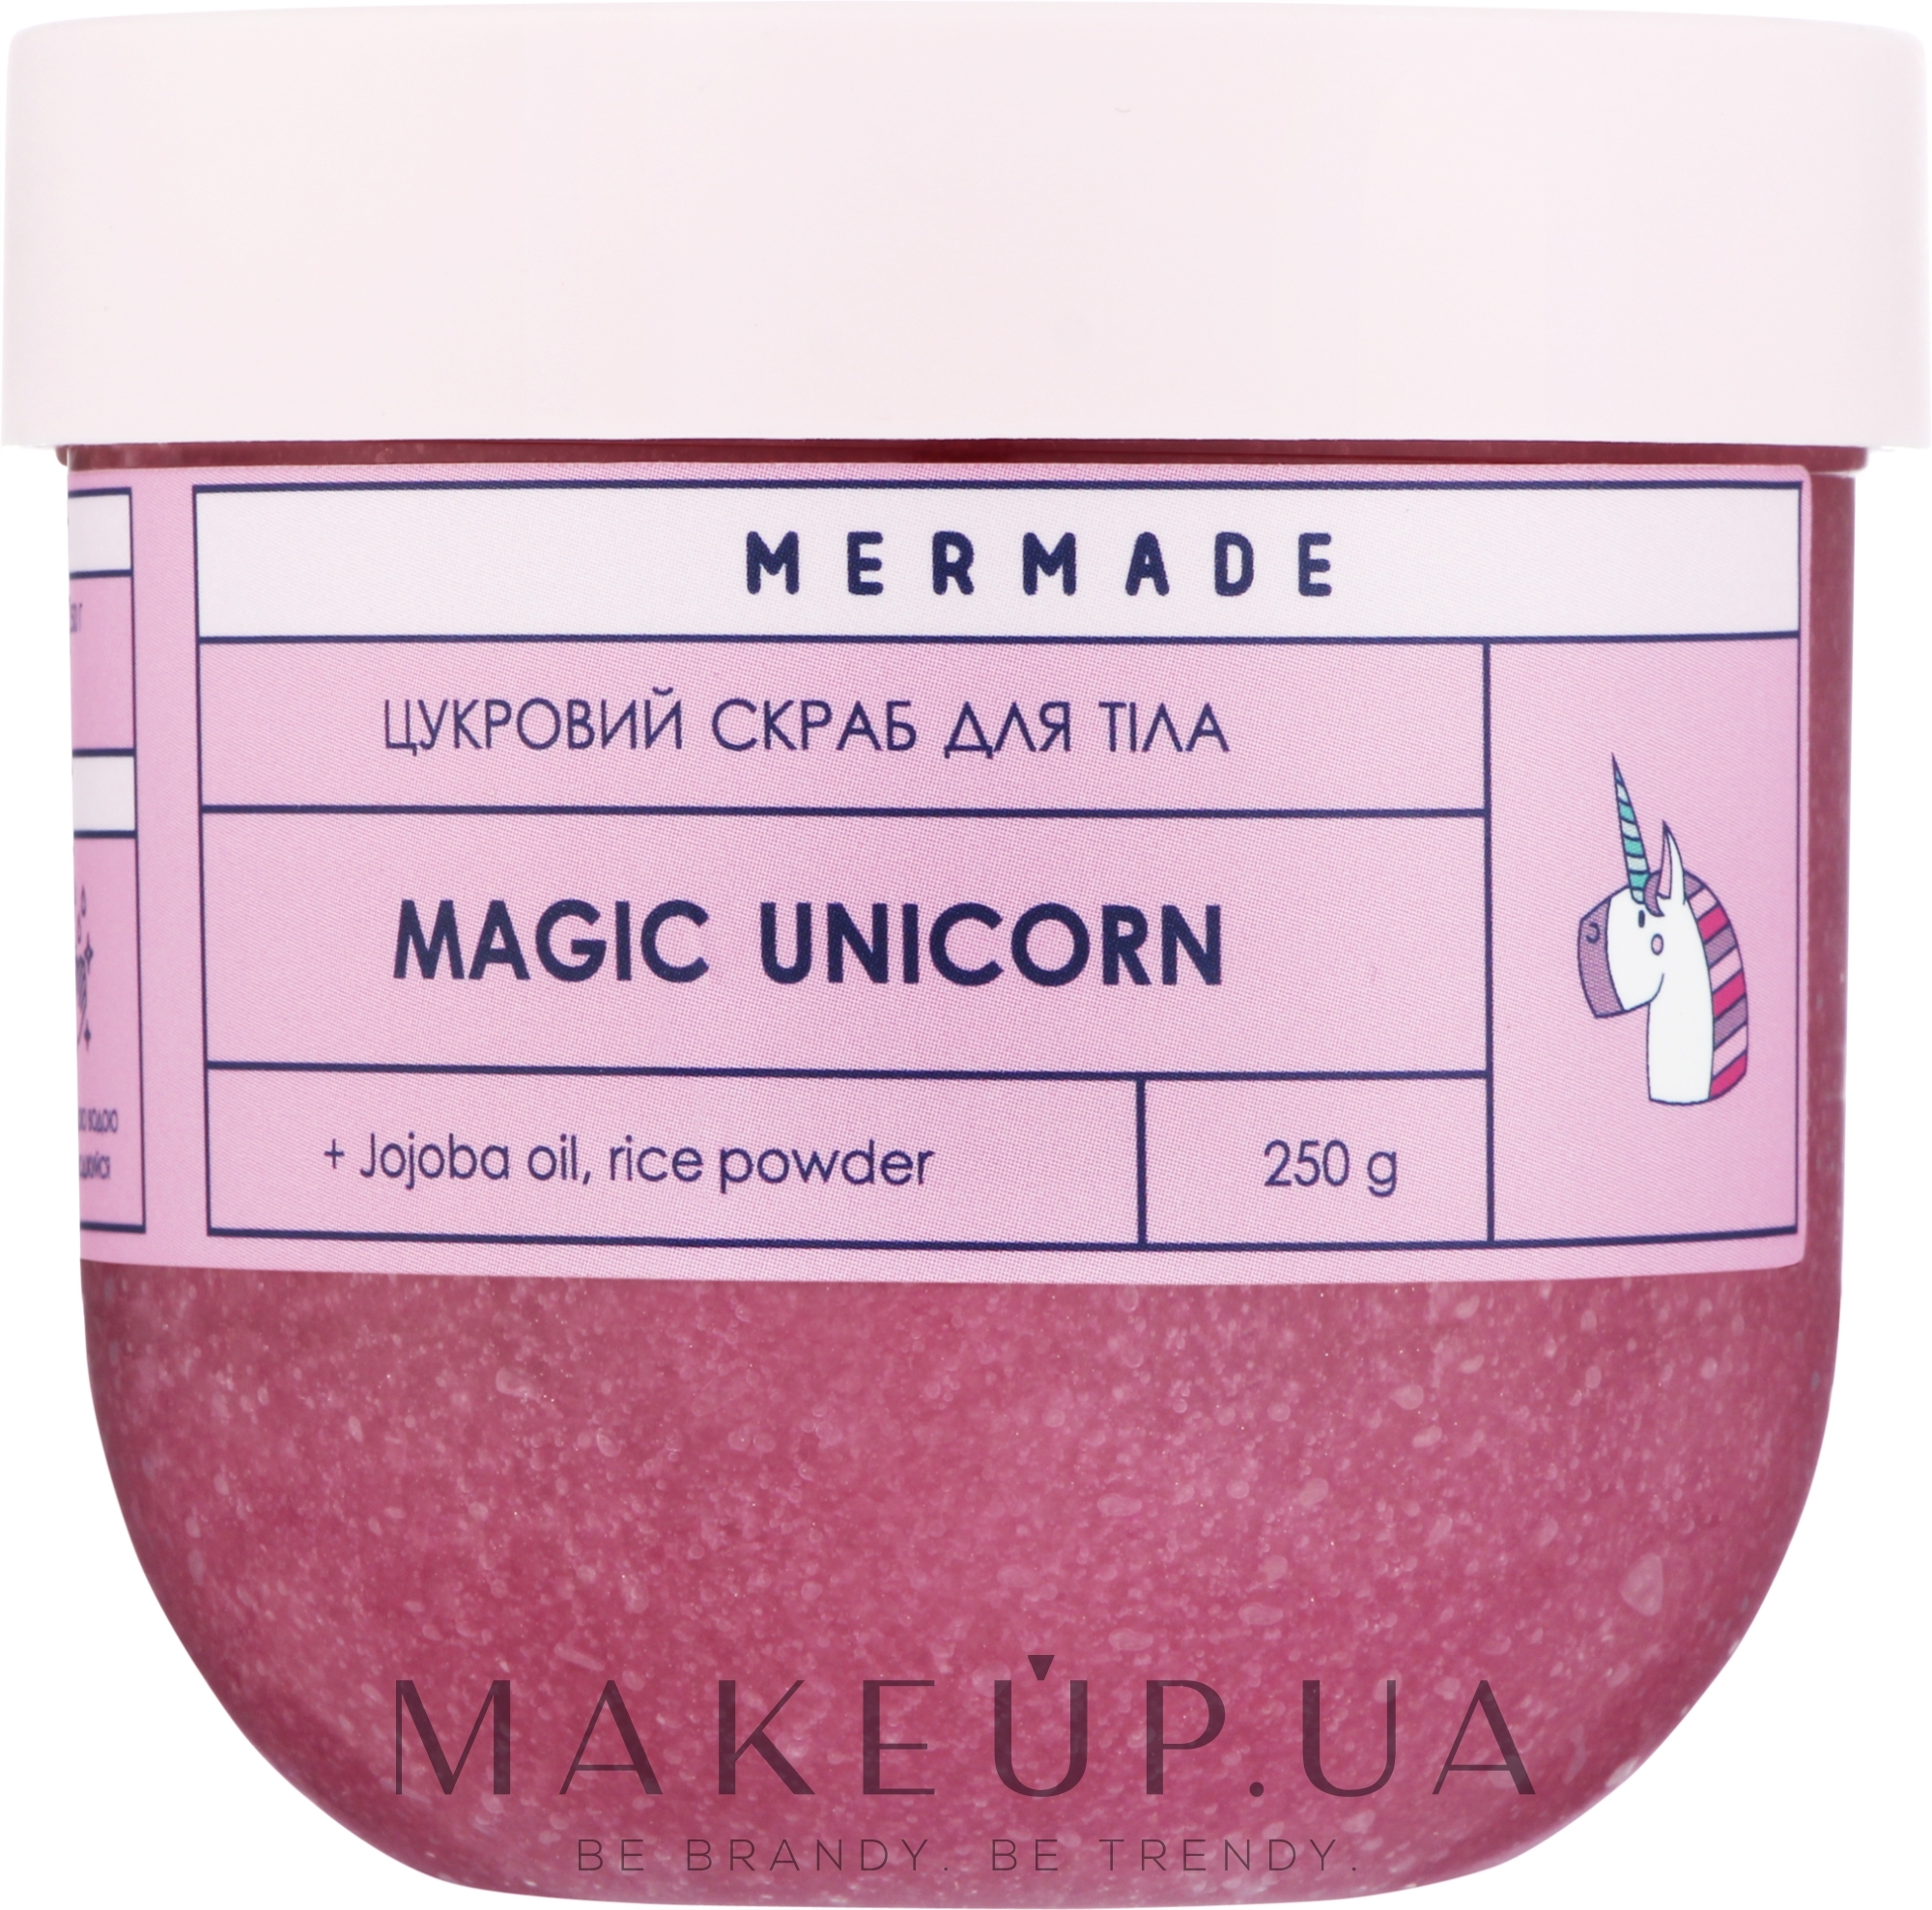 Сахарный скраб для тела - Mermade Magic Unicorn — фото 250g